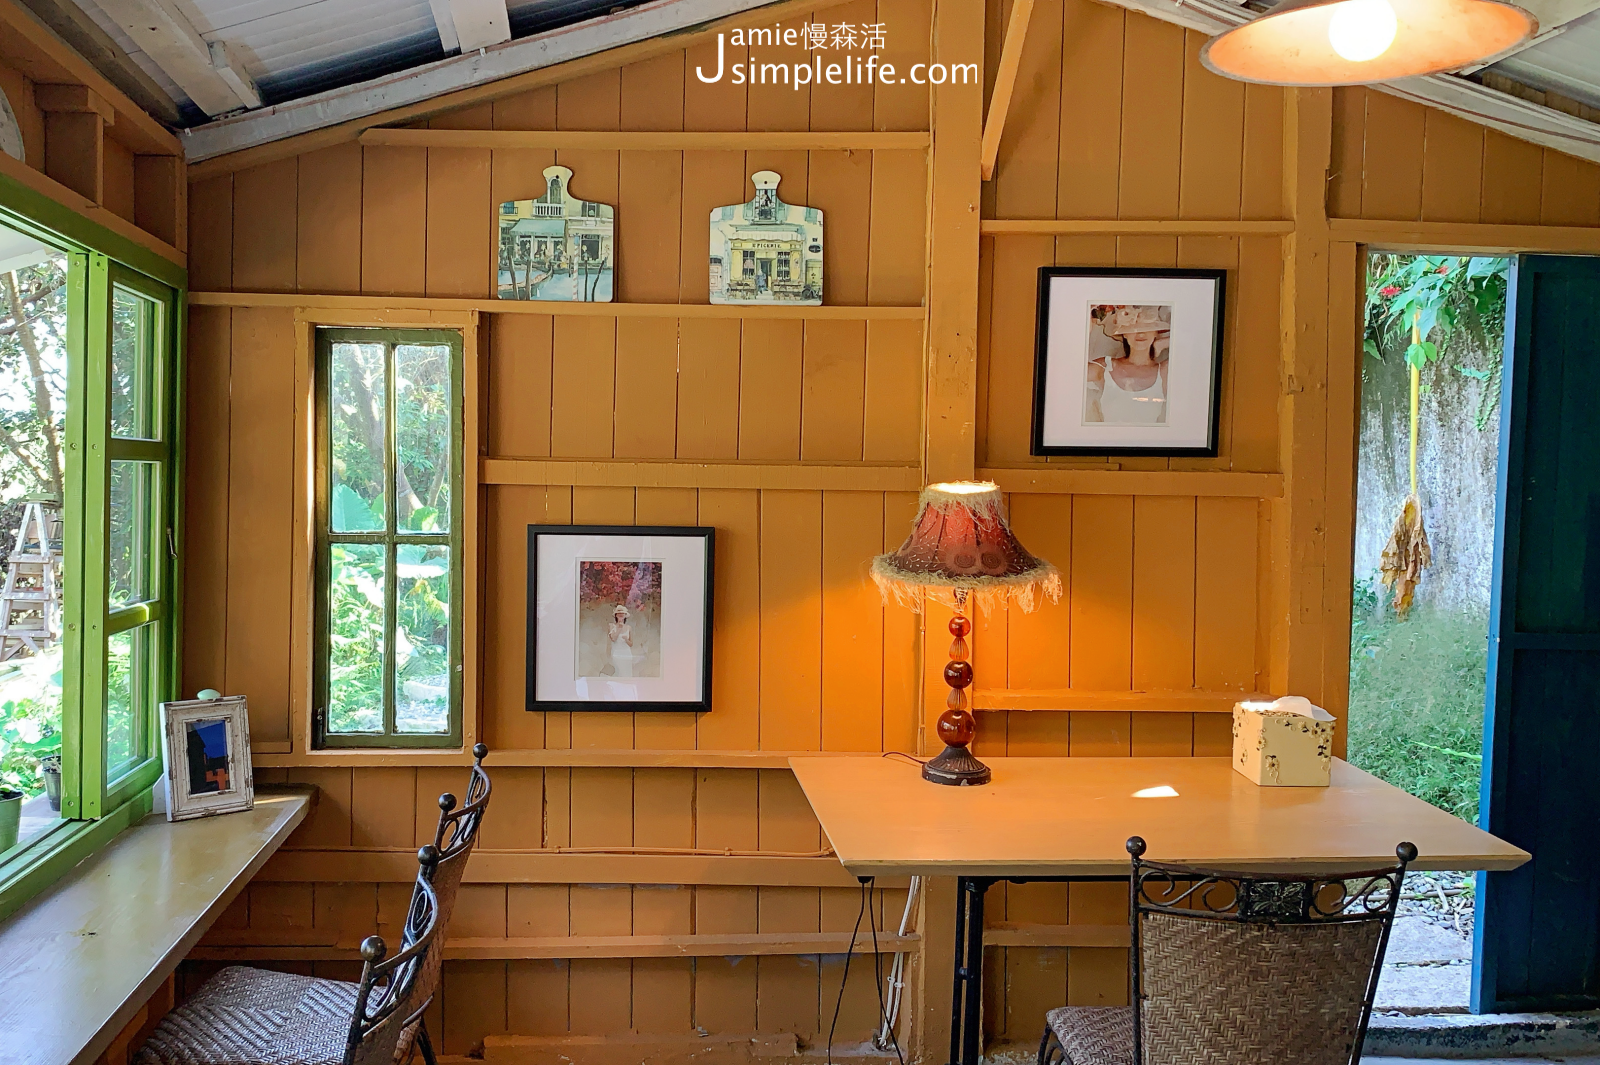 陽明山蒙馬特影像咖啡 裝飾偏甜的用餐環境與氛圍 黃色小屋空間